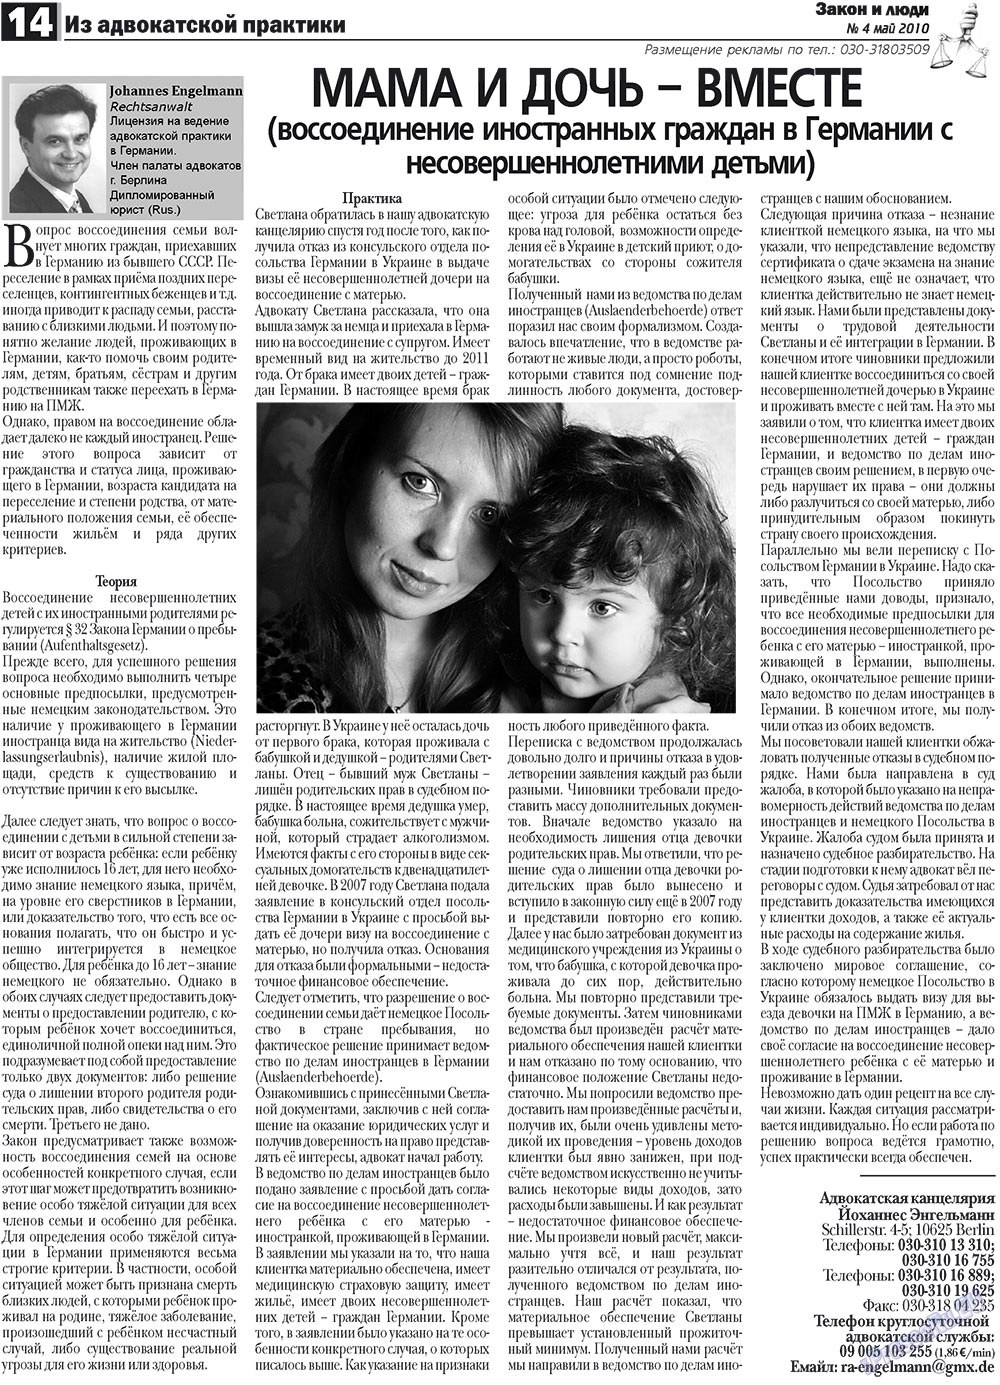 Закон и люди, газета. 2010 №4 стр.14